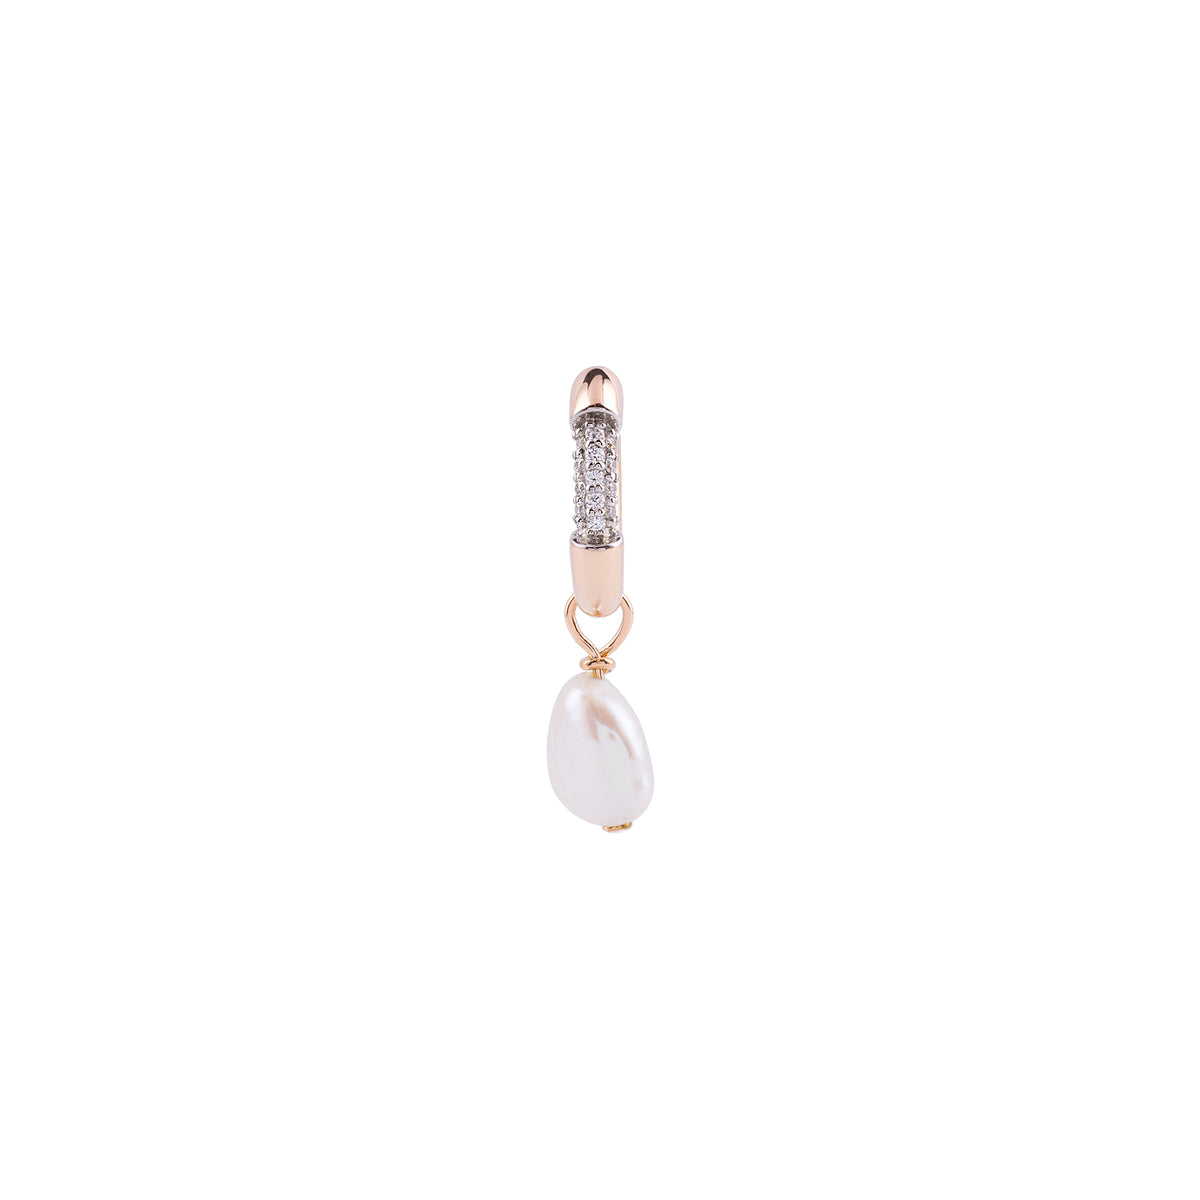 Explorer Hoop Earring Roslow Gold / White Brilliant Diamond / White Pearl